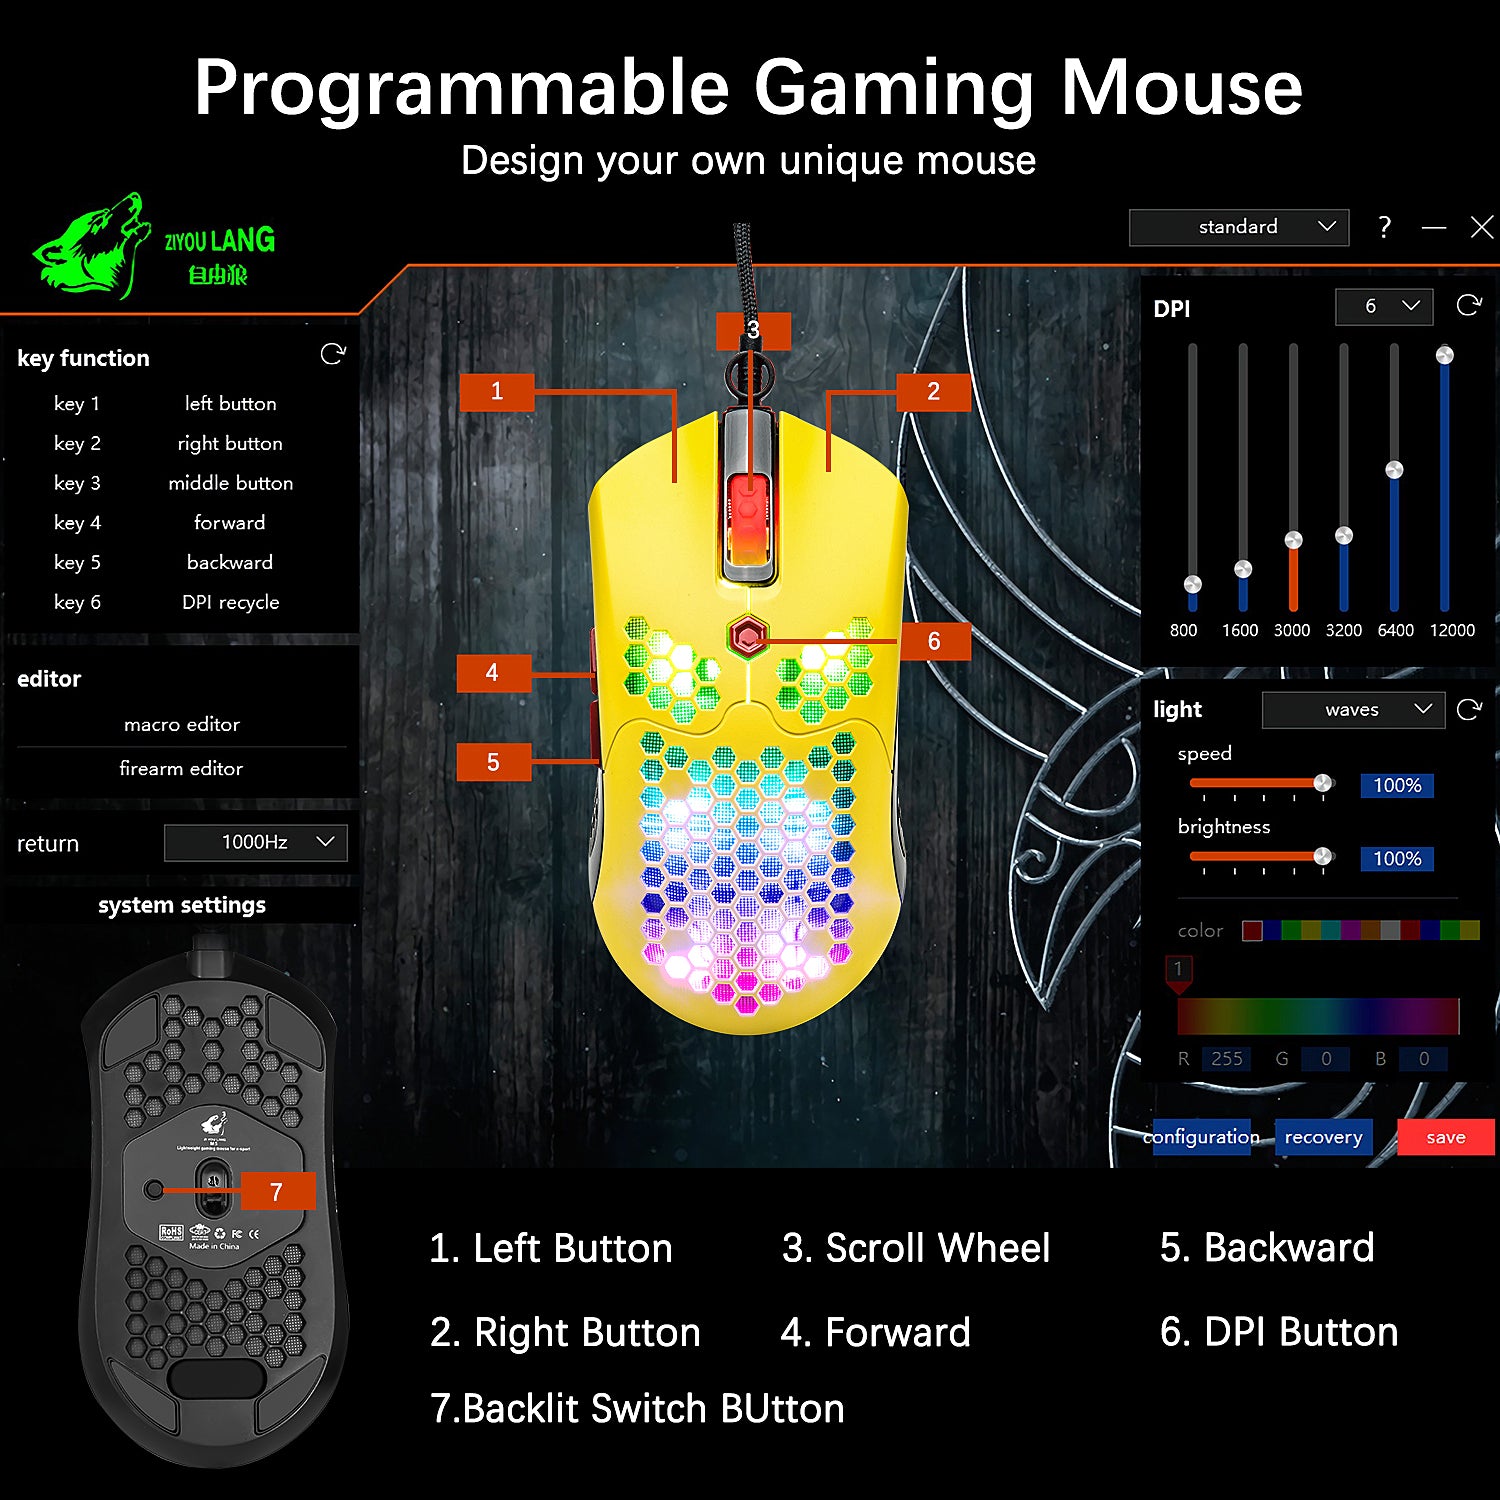 有線軽量ゲーミングマウス、7ボタンのプログラム可能なドライバーを備えた26 RGBバックライト付きマウス、PAW3325 12000DPIマウス、PCゲーマー向けの超軽量ハニカムシェル超織りケーブルマウスXbox PS4ユーザー（黒）